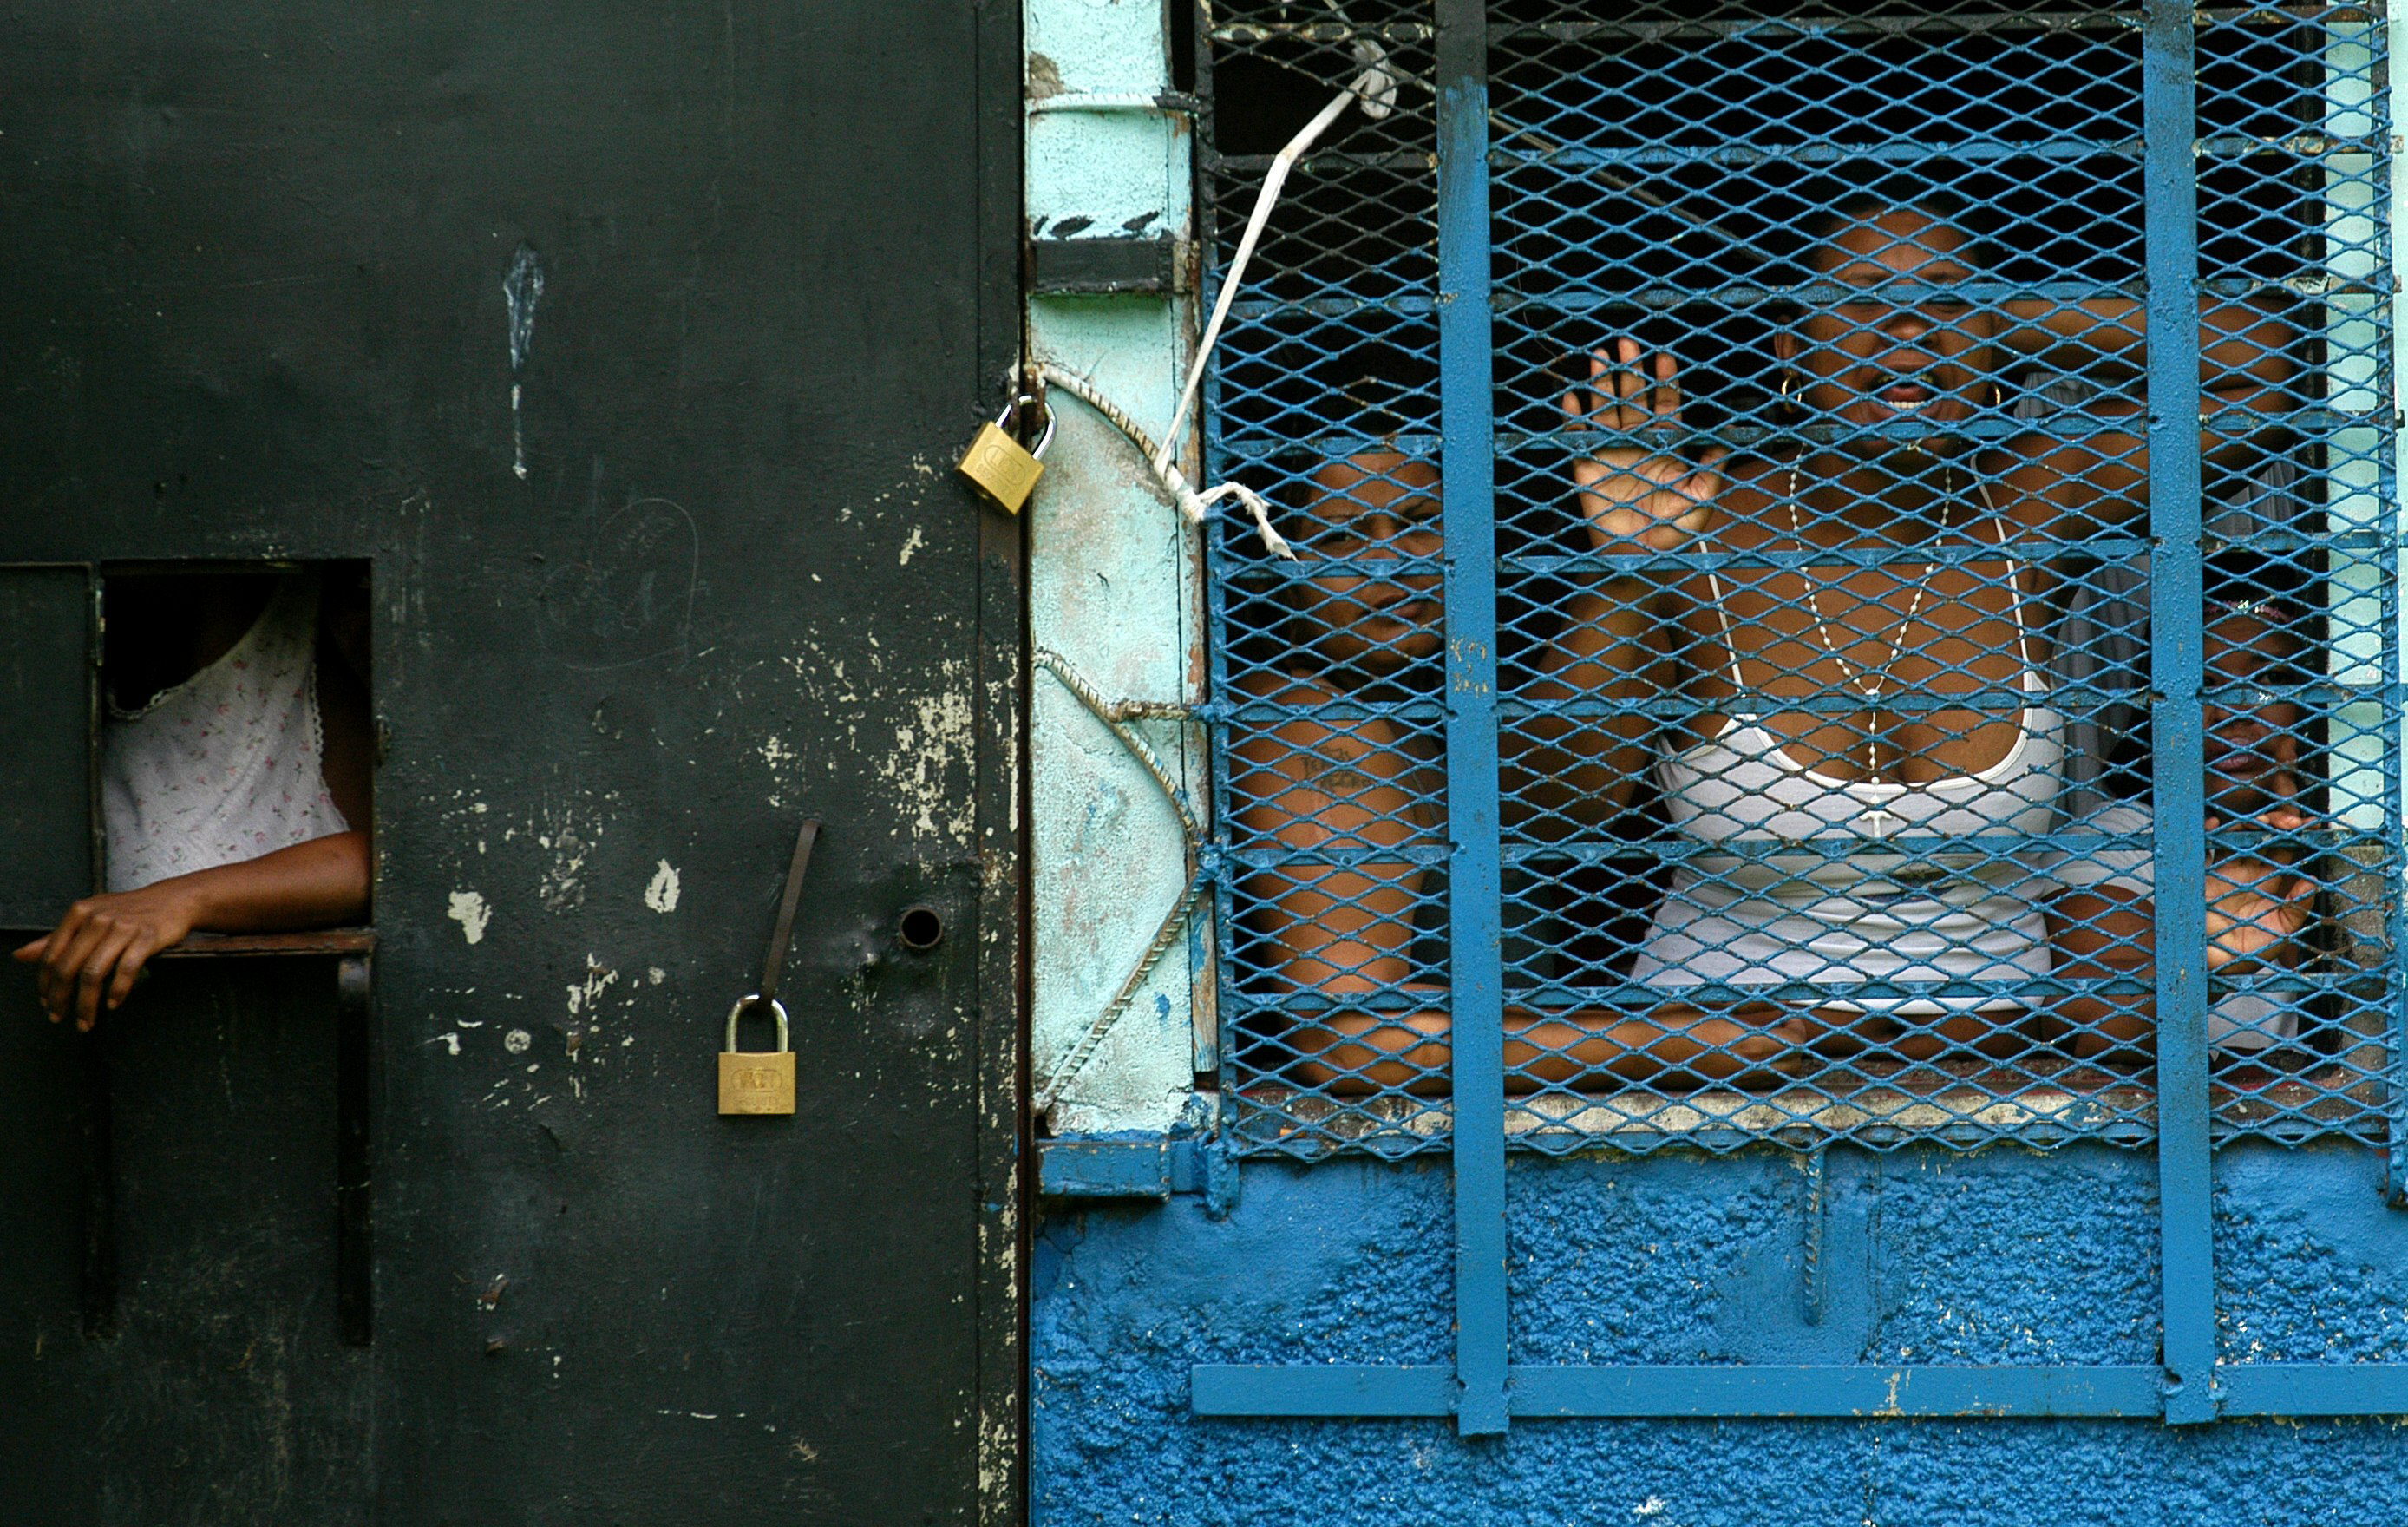 Sobrepoblación y carencias en cárceles dificultan reinserción social, señala reporte del IBD